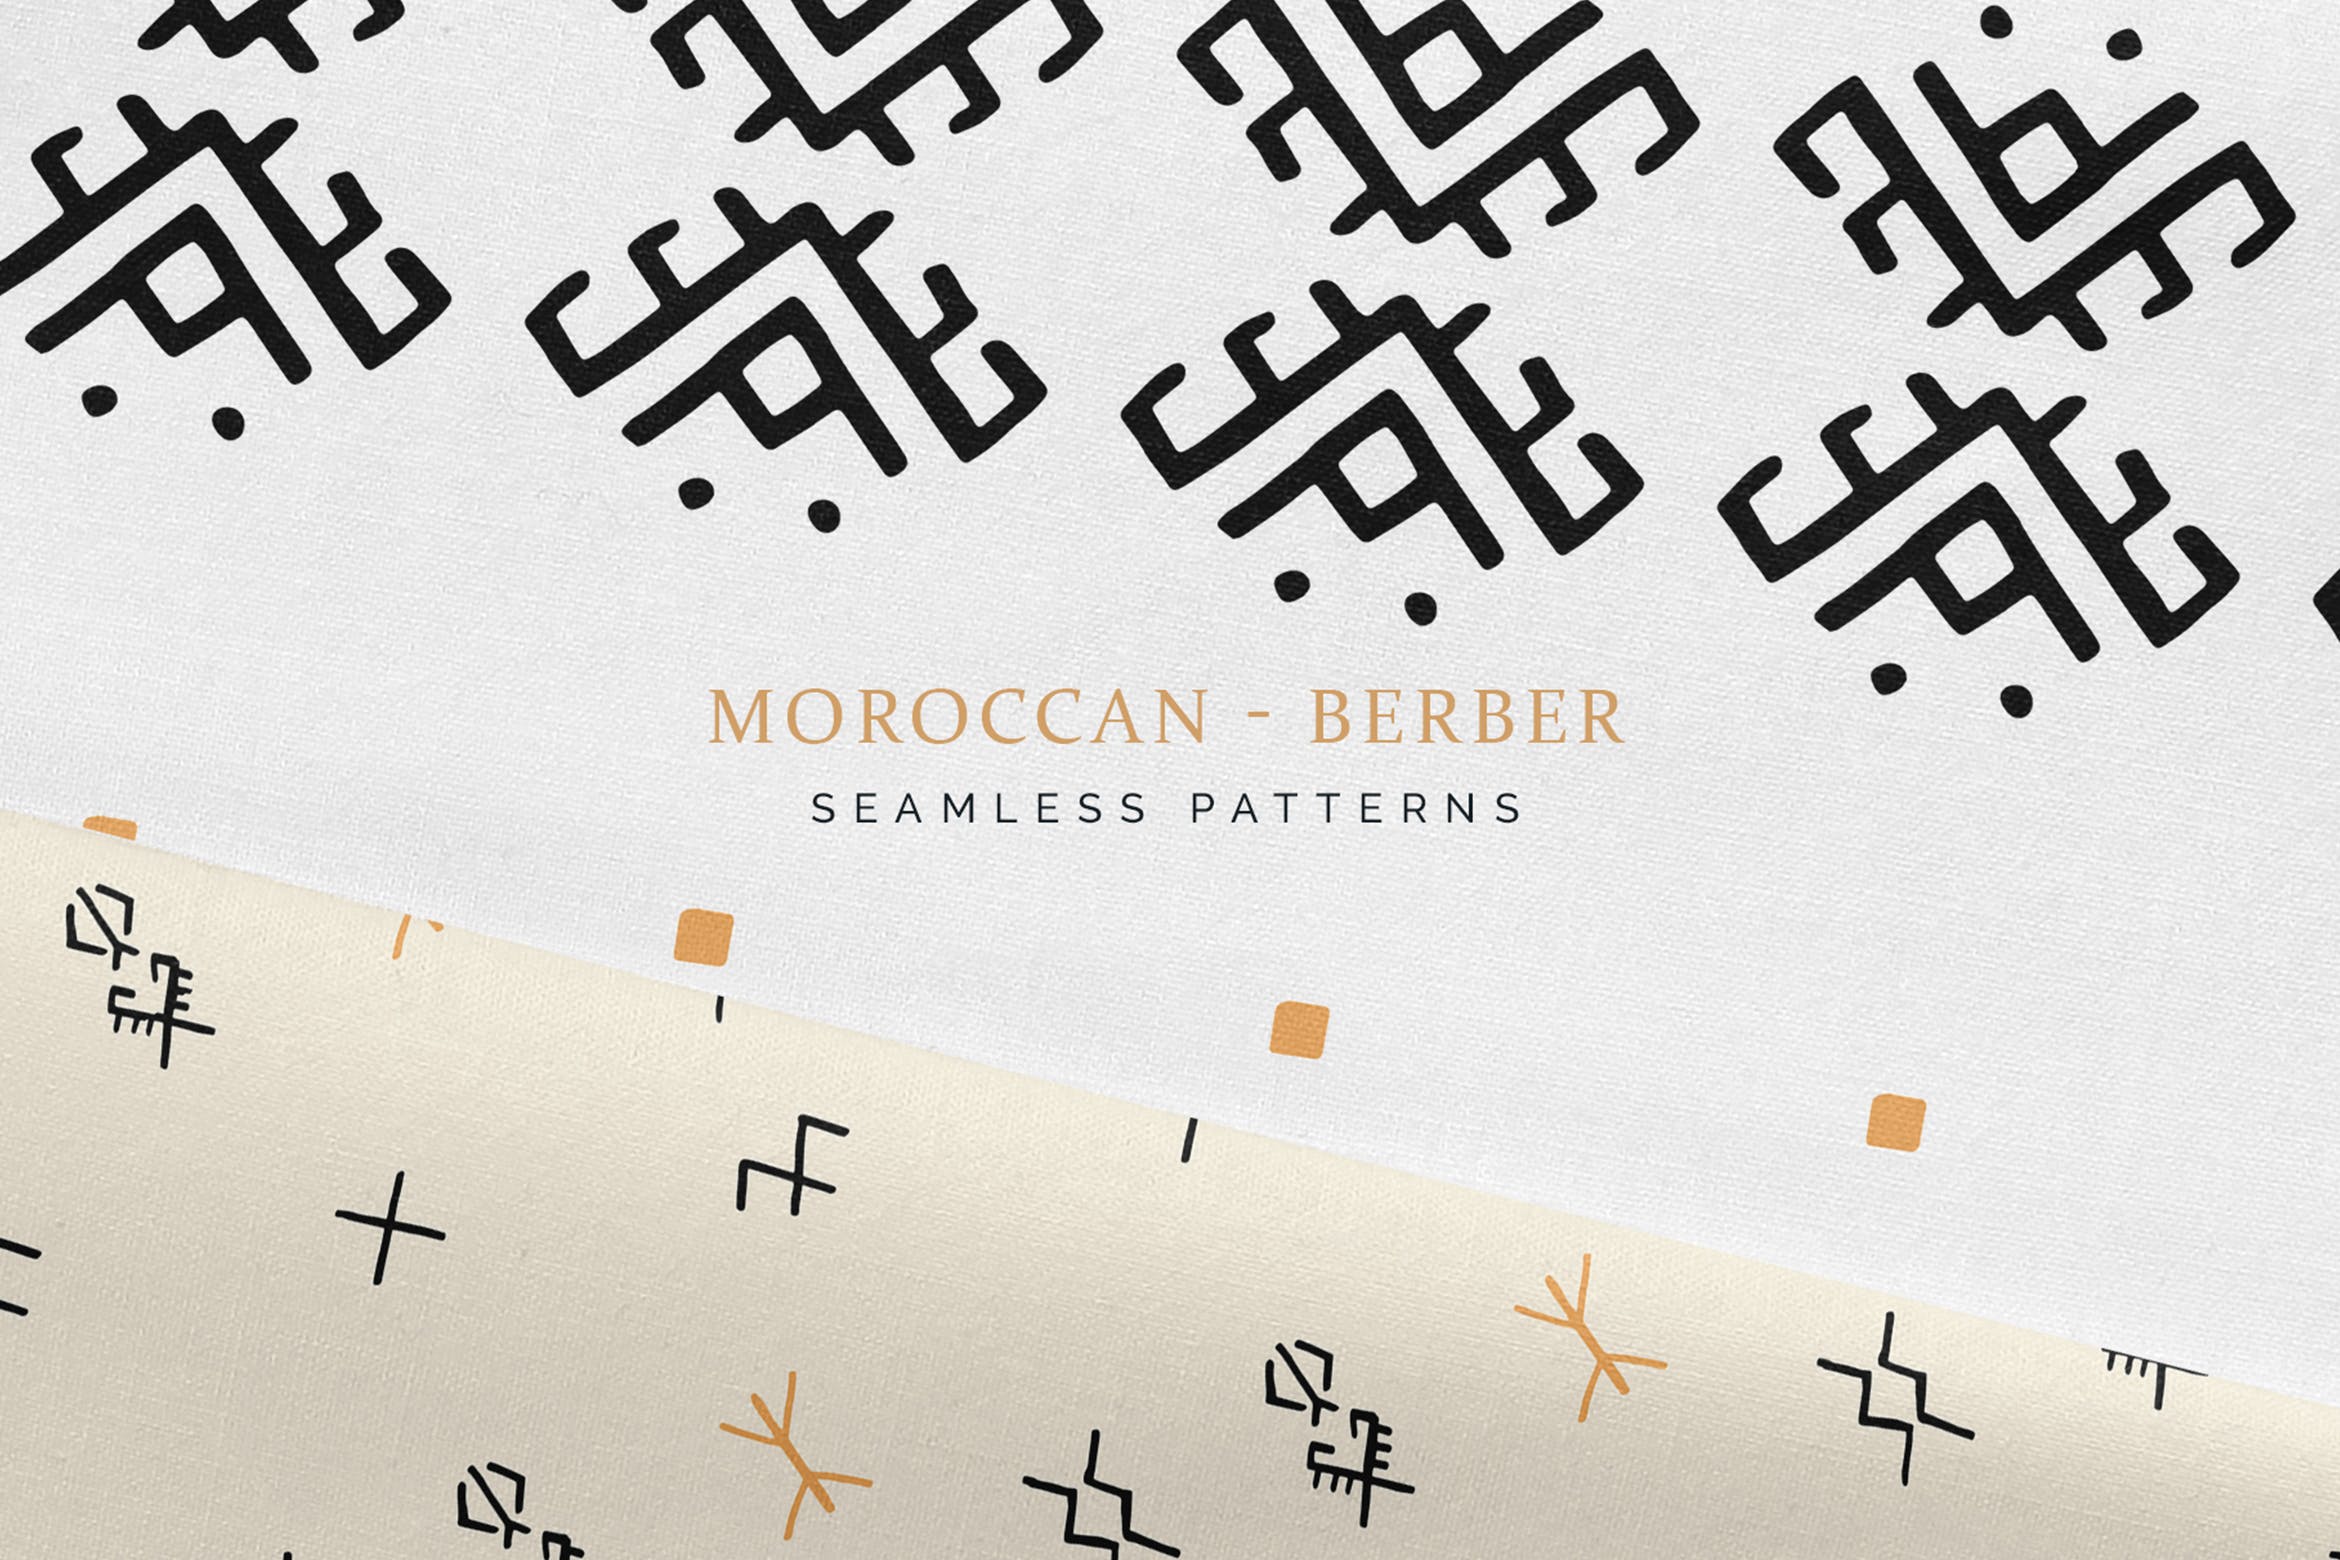 摩洛哥柏柏尔人文化图案无缝纹理背景素材 Moroccan Berber Seamless Patterns插图